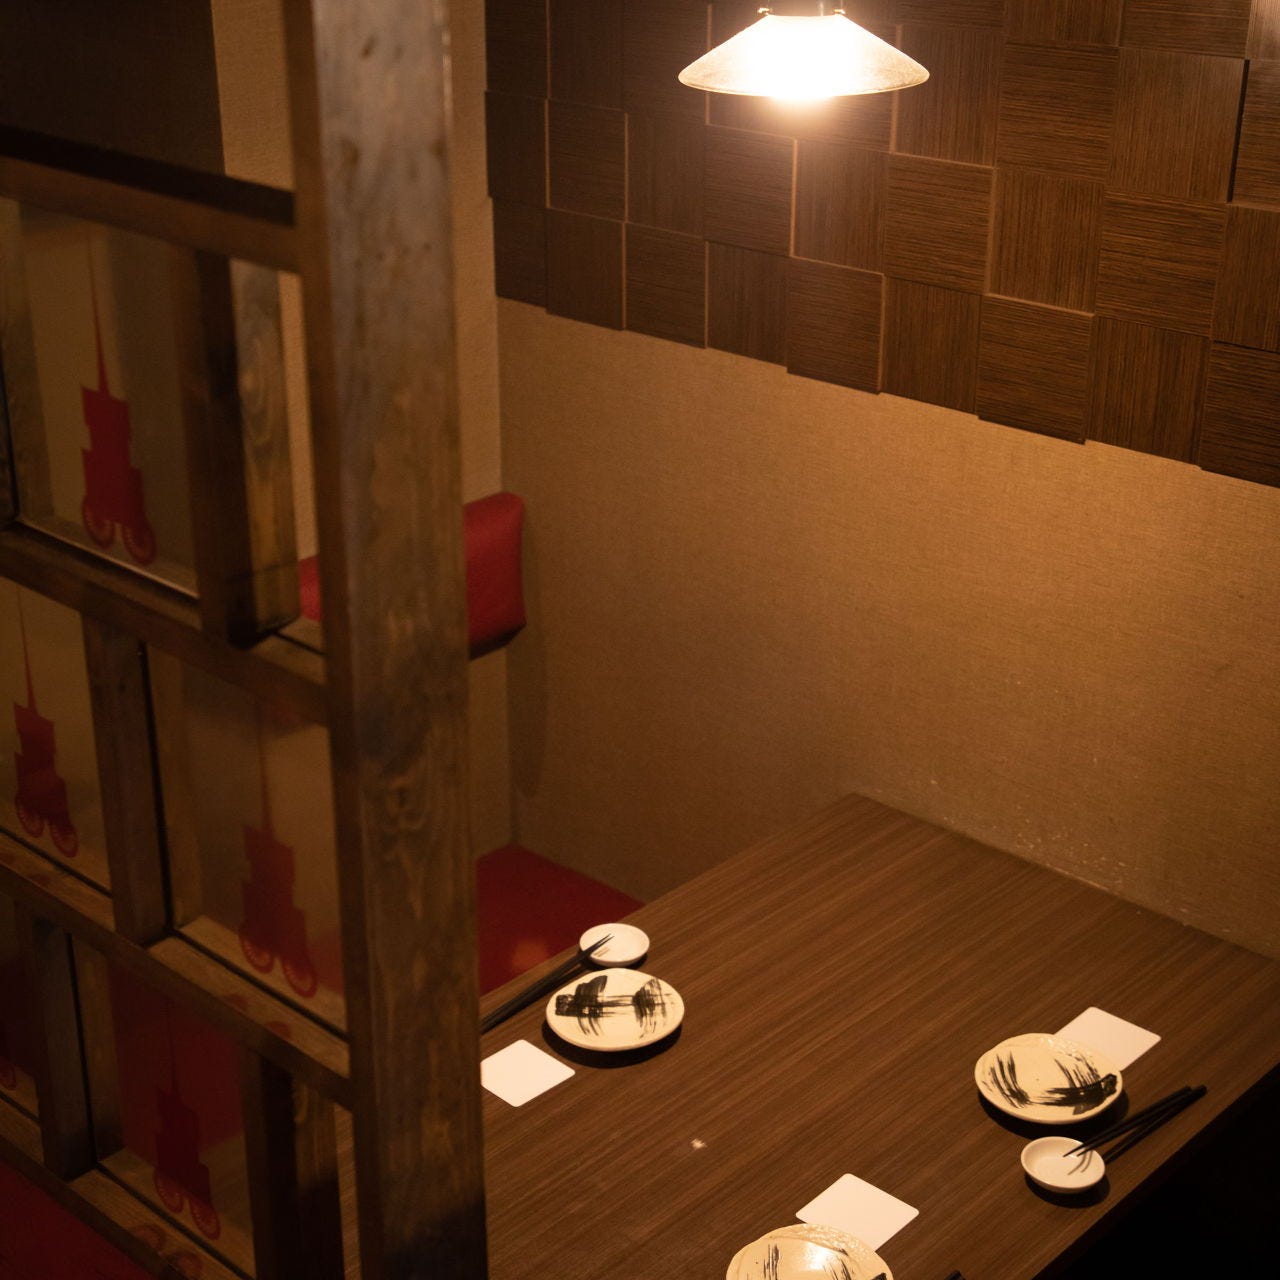 21年 最新グルメ 京都駅にある個室でゆったり京料理を味わえるお店 レストラン カフェ 居酒屋のネット予約 京都版